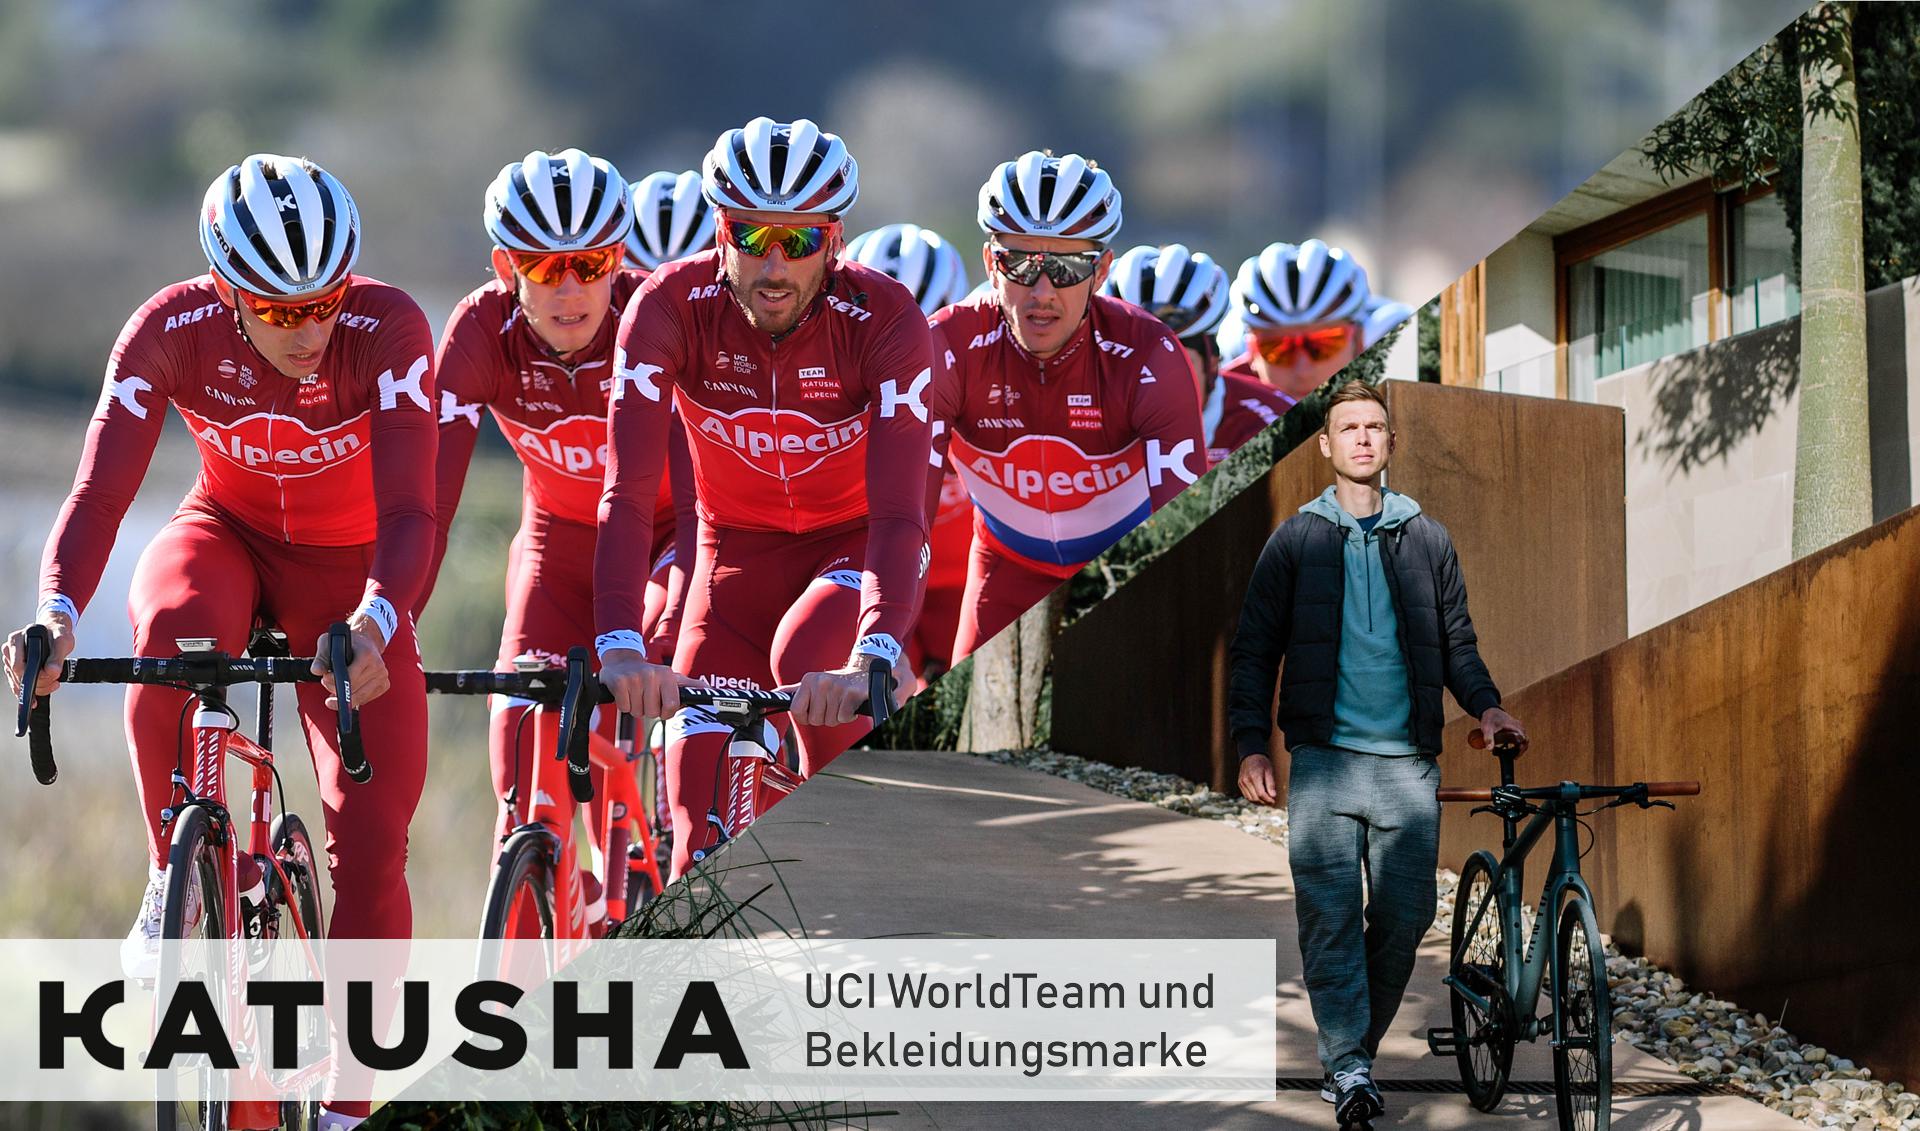 KATUSHA - UCI WorldTeam und Bekleidungsmarke